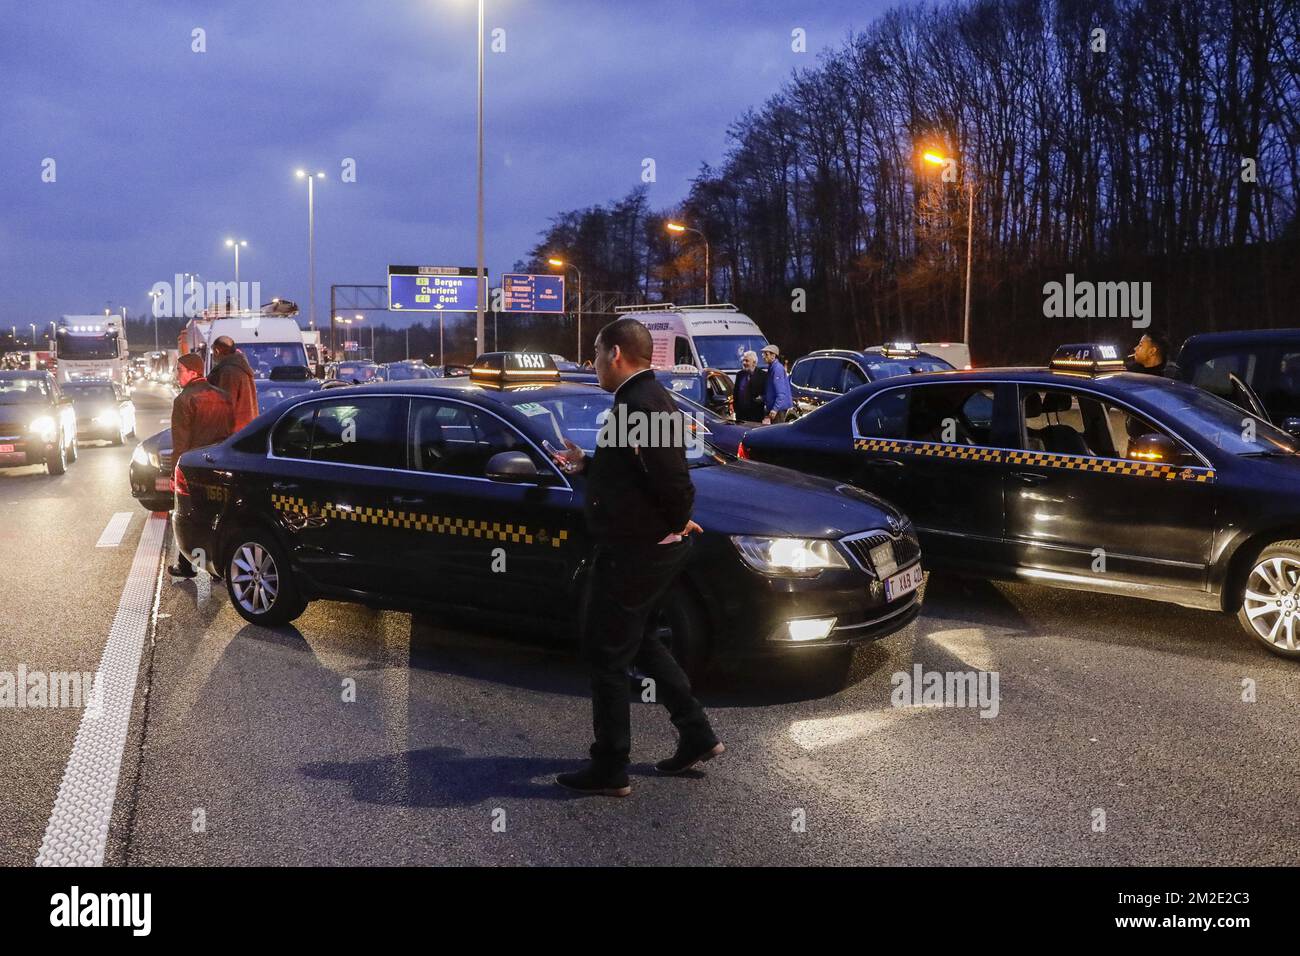 L'illustration montre une action de protestation des chauffeurs de taxi dans le centre-ville de Bruxelles, le mardi 27 mars 2018. BELGA PHOTO THIERRY ROGE Banque D'Images